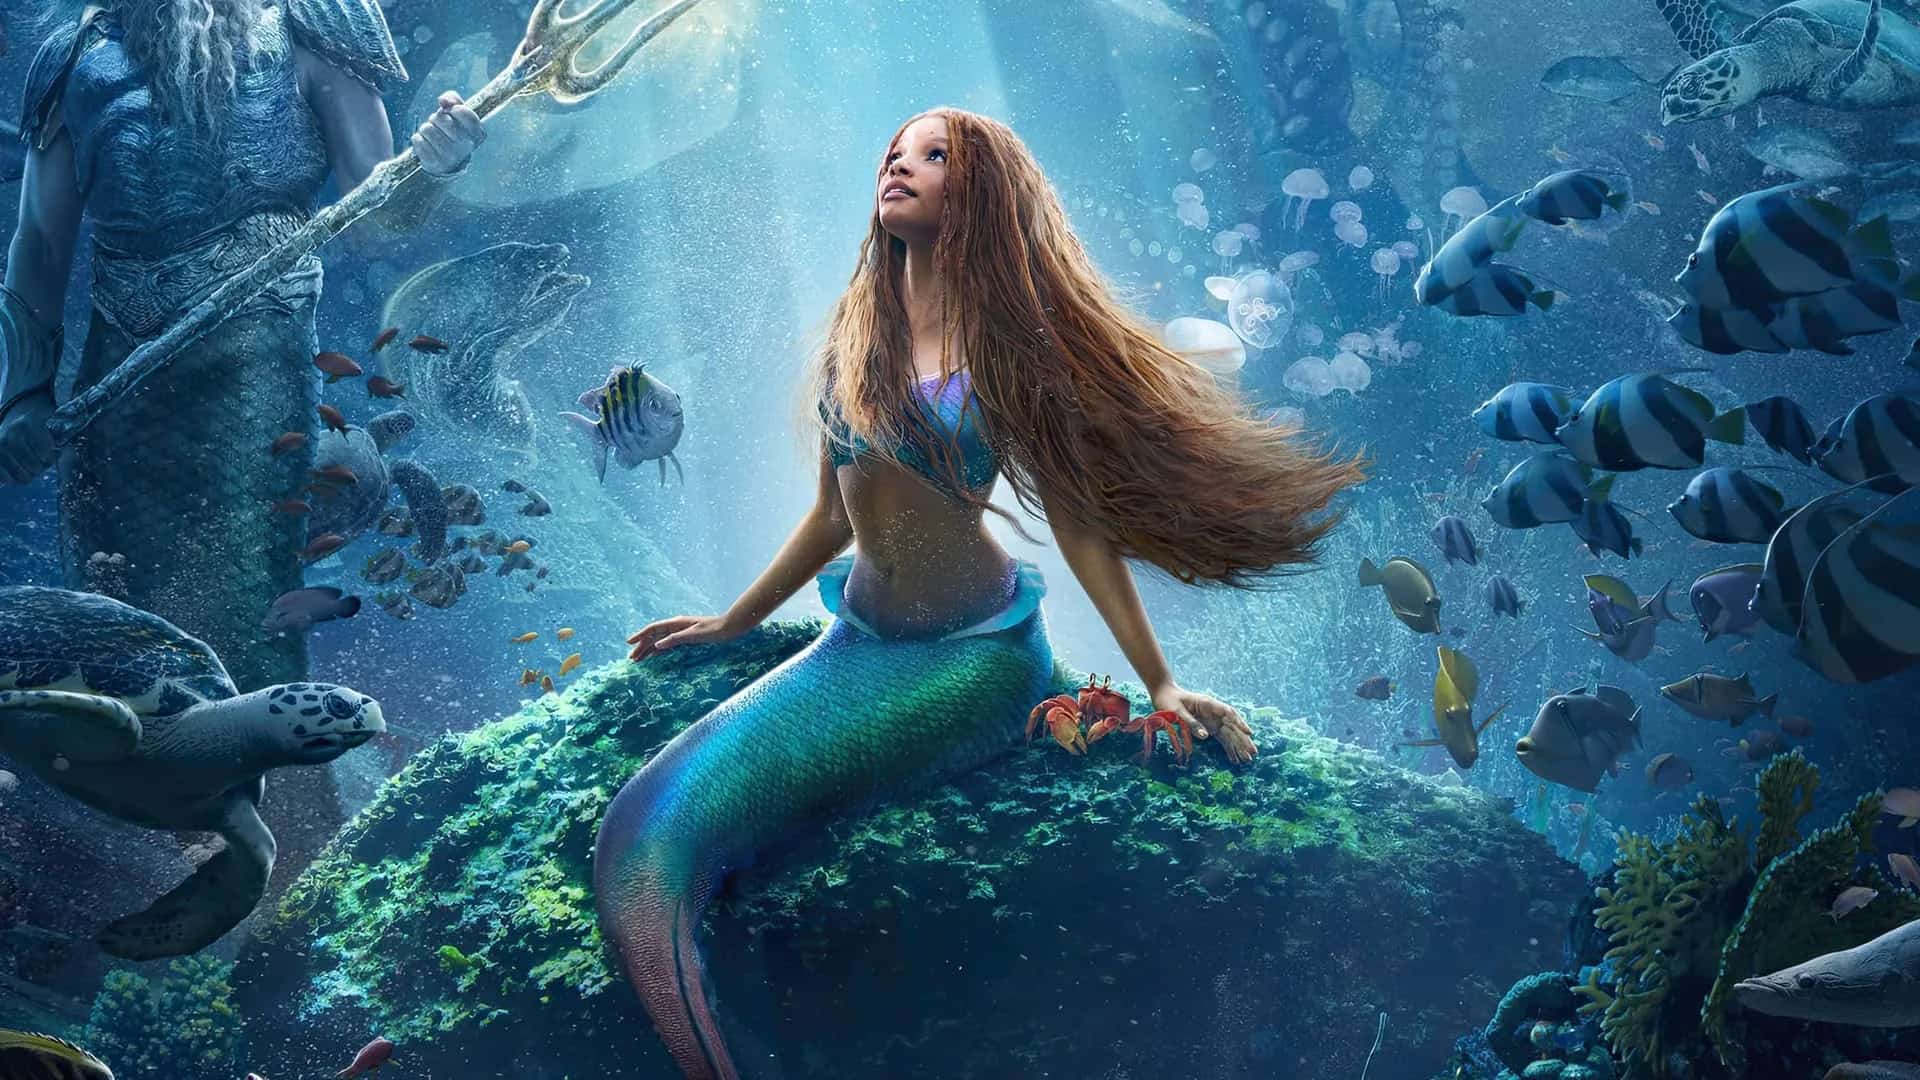 Imagen promocional de La Sirenita 2023 con una sirena sobre una roca en el fondo del mar